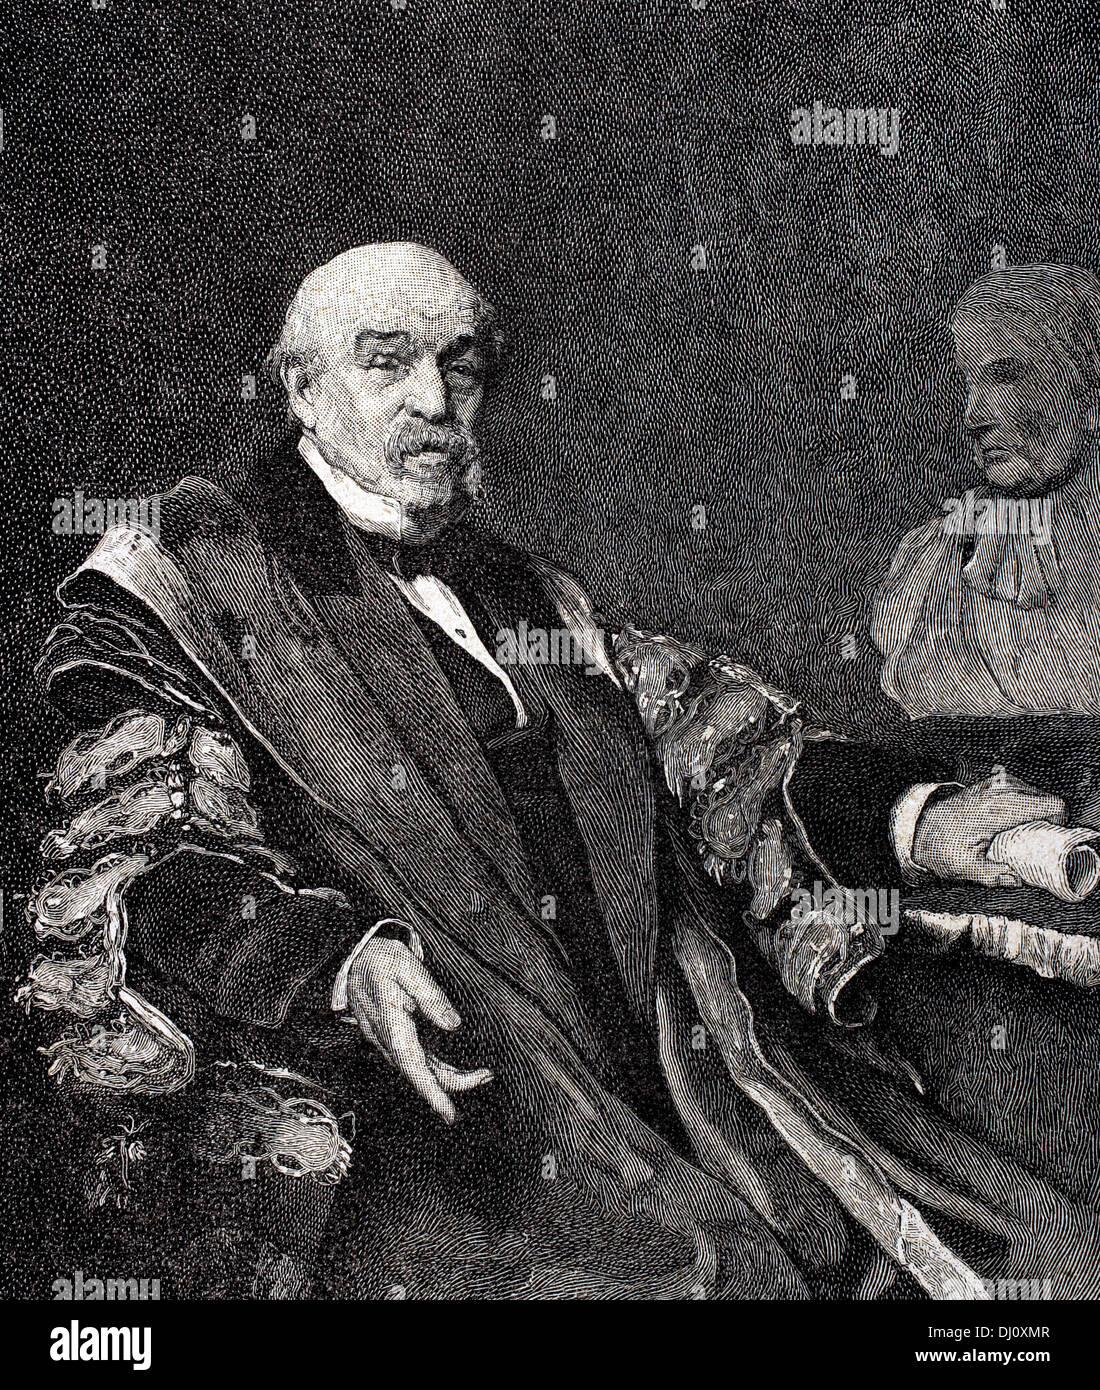 Sir William Jenner, 1. Baronet (1815 – 1898). Englischer Arzt. Er entdeckte die Unterscheidung zwischen Typhus und Typhus. Stockfoto